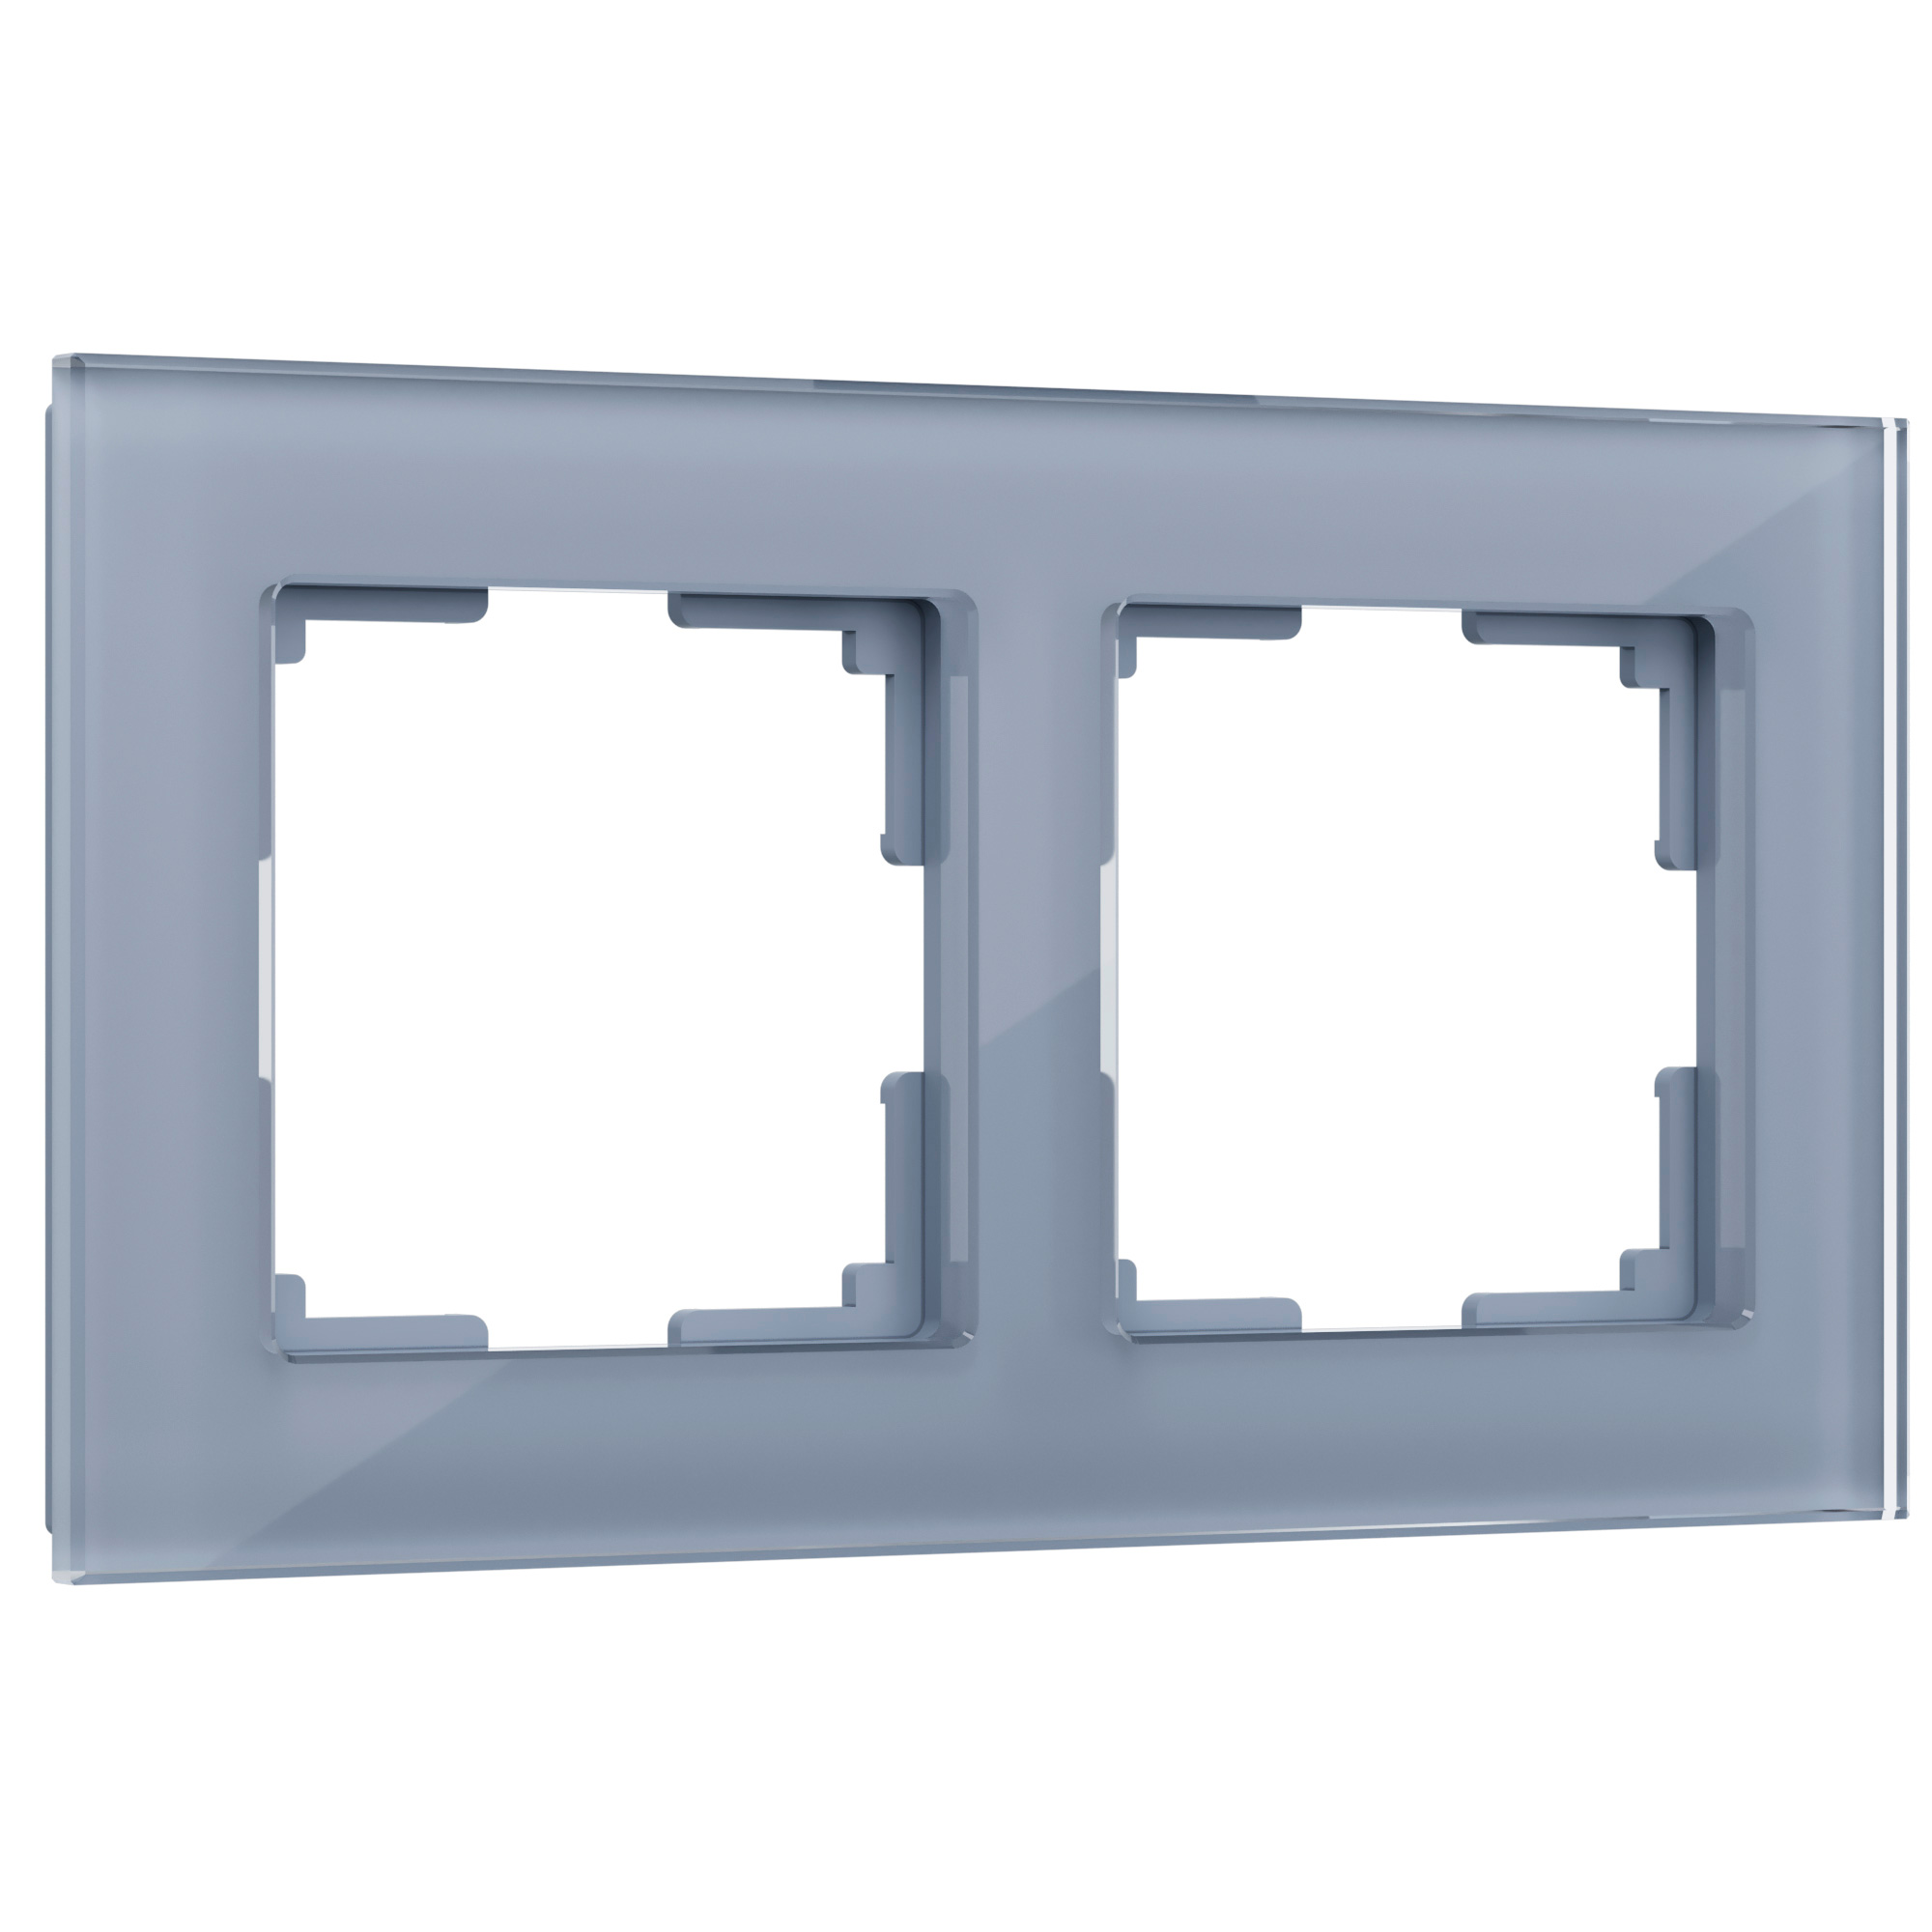 Рамка для розетки / выключателя на 2 поста Werkel W0021115  Favorit серый стекло рамка luxar art на 1 пост стекло мокко 4606400620617